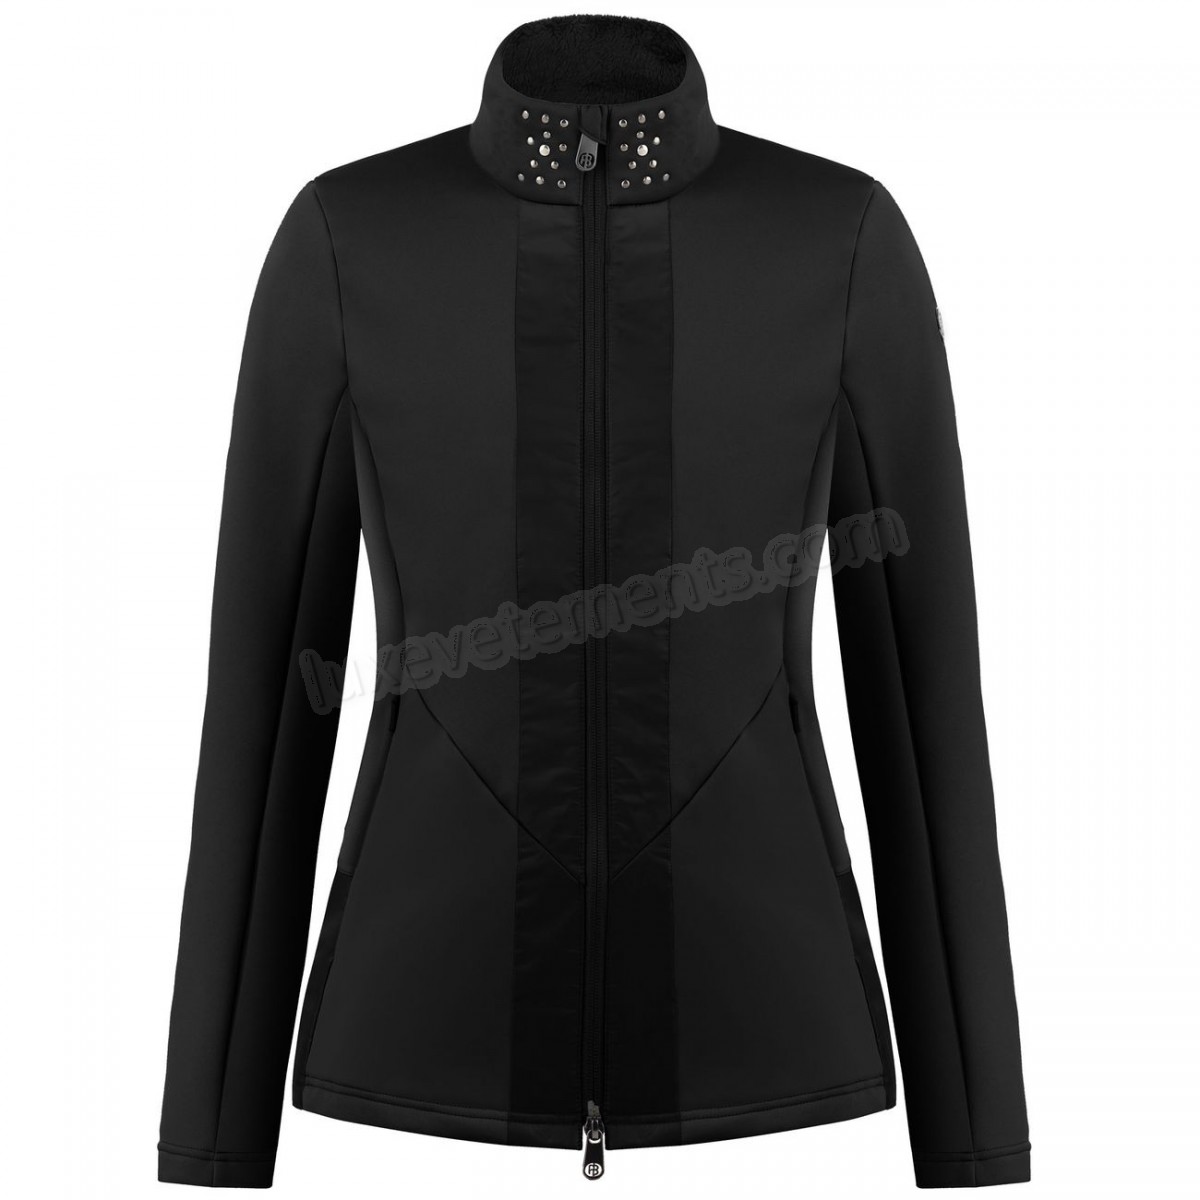 Poivre Blanc-Sports d'hiver femme POIVRE BLANC Veste En Polaire Poivre Blanc Hybrid Stretch Fleece Jacket 1702 Black Femme Vente en ligne - -0